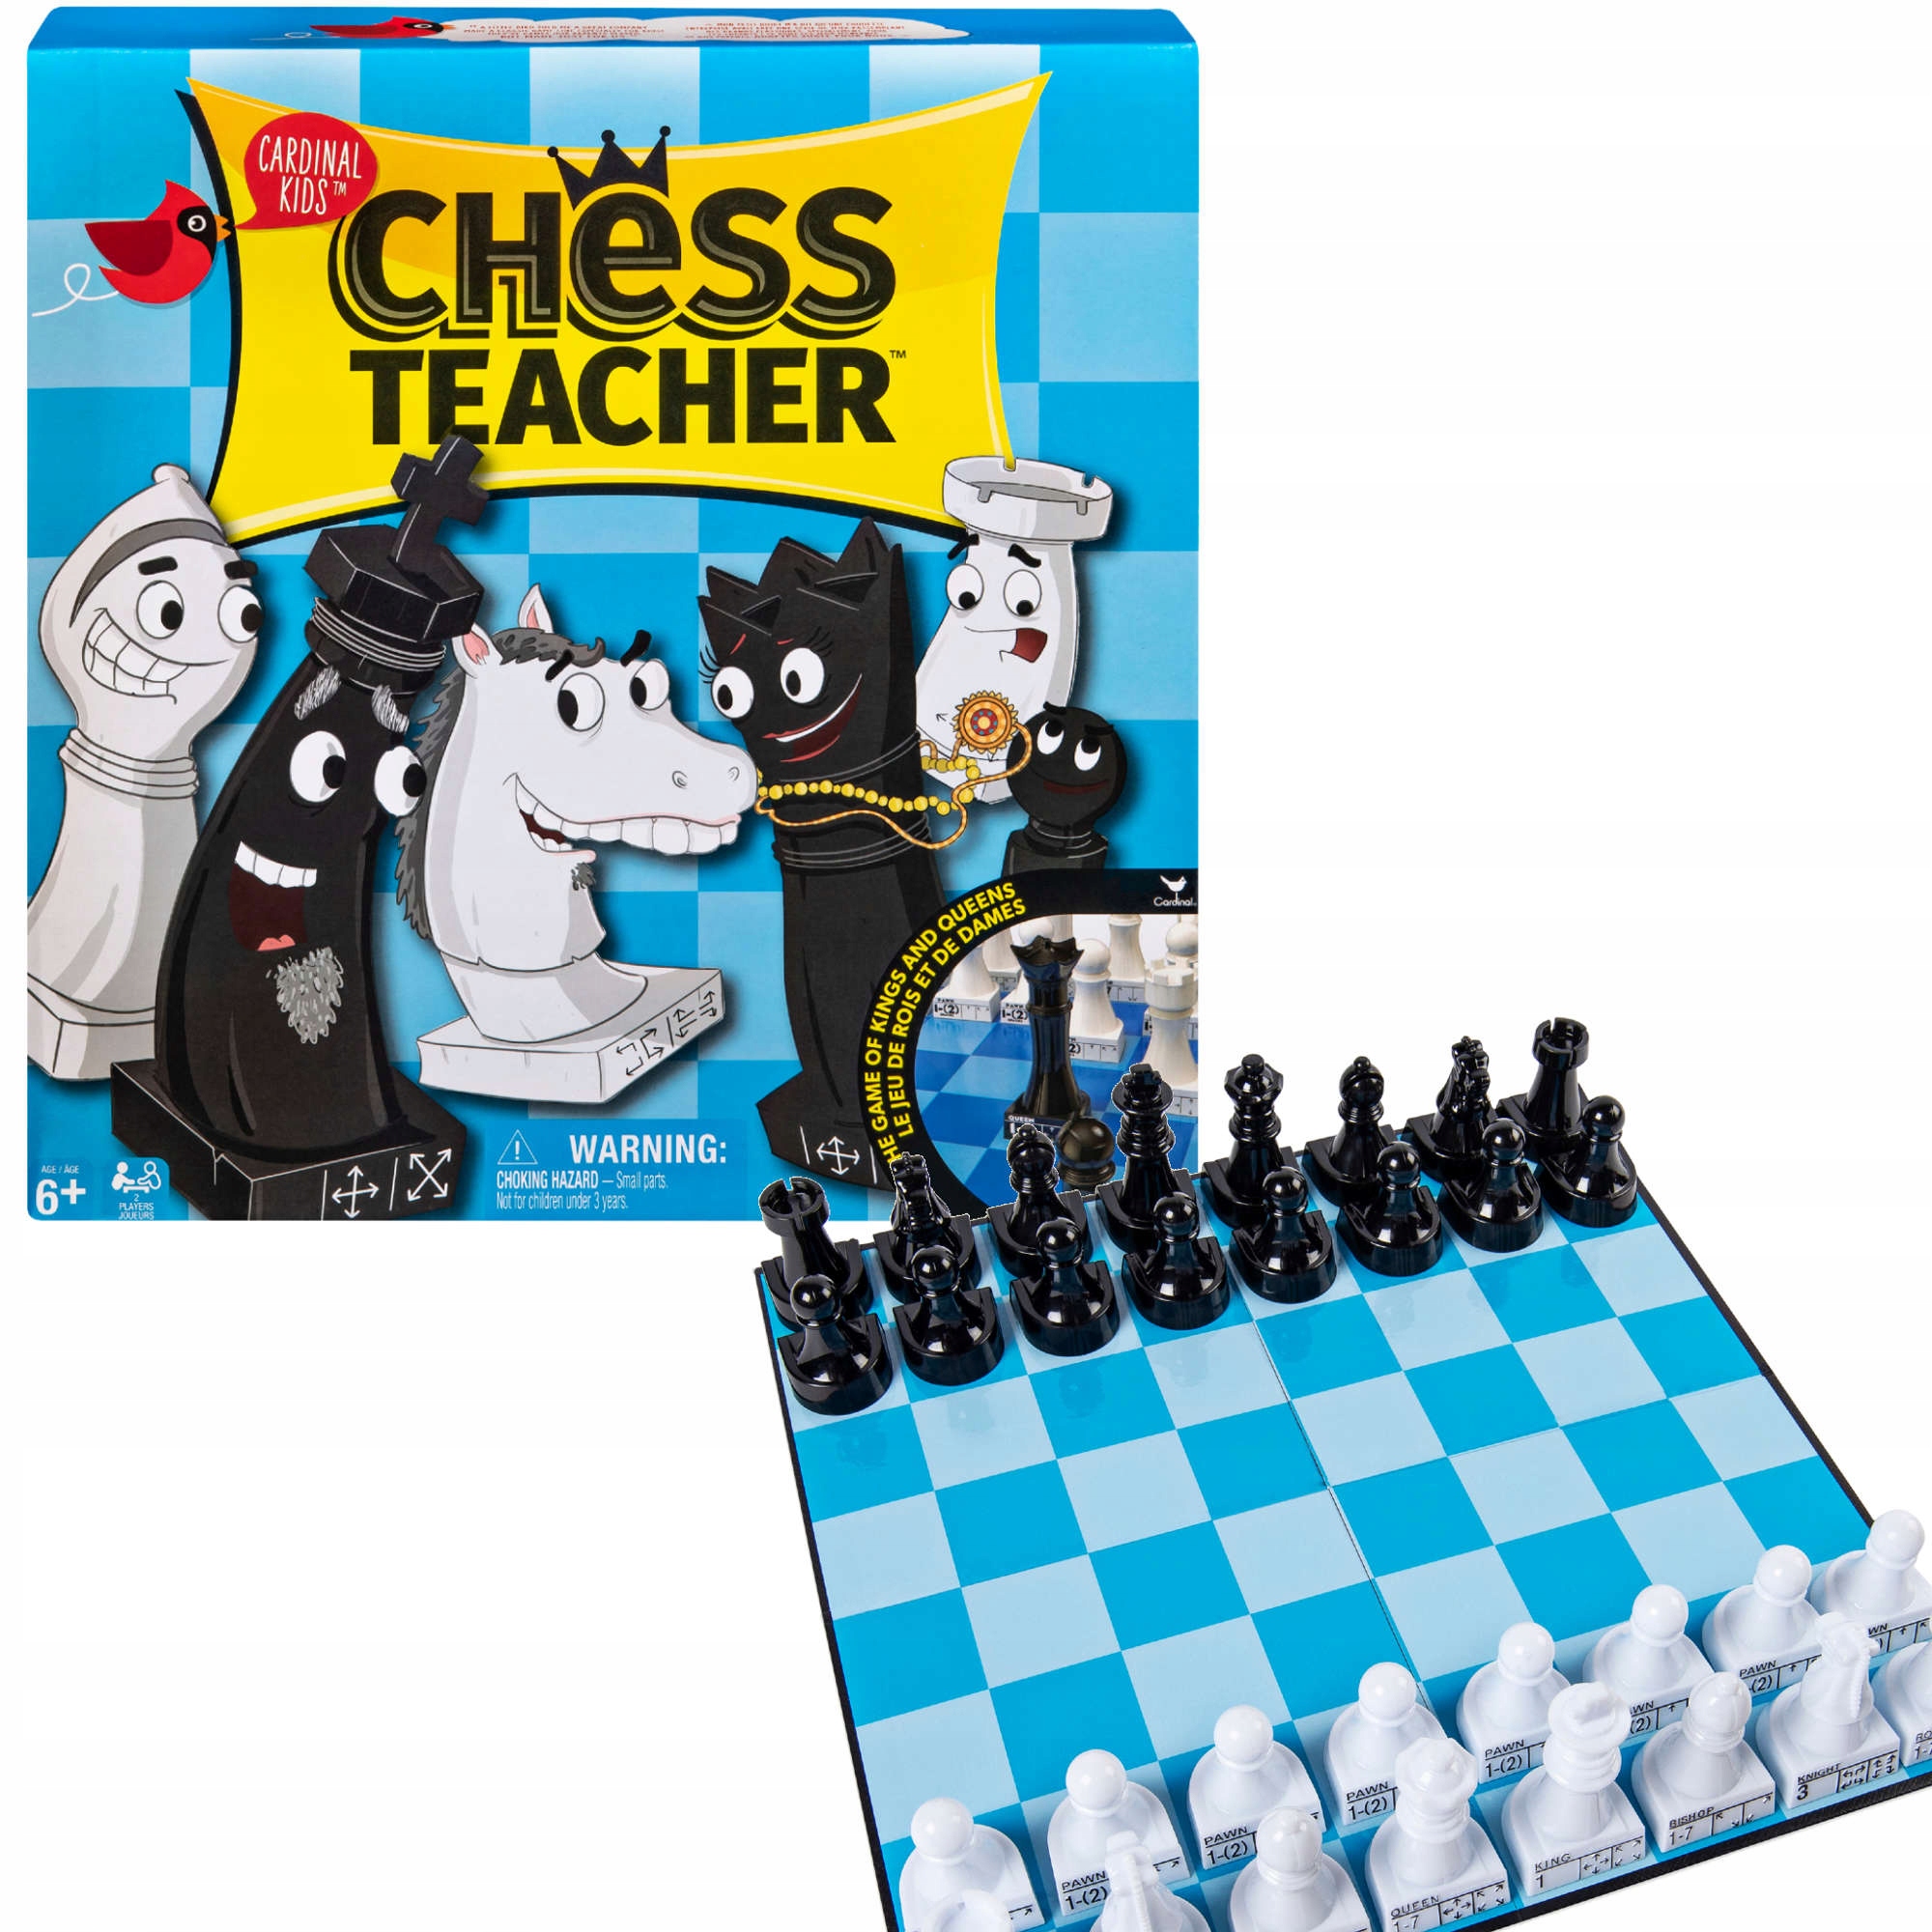 chess24.com your playground, graj w szachy, ucz się szachów, czytaj  szachowe wiadomości i oglądaj szachy na ż…